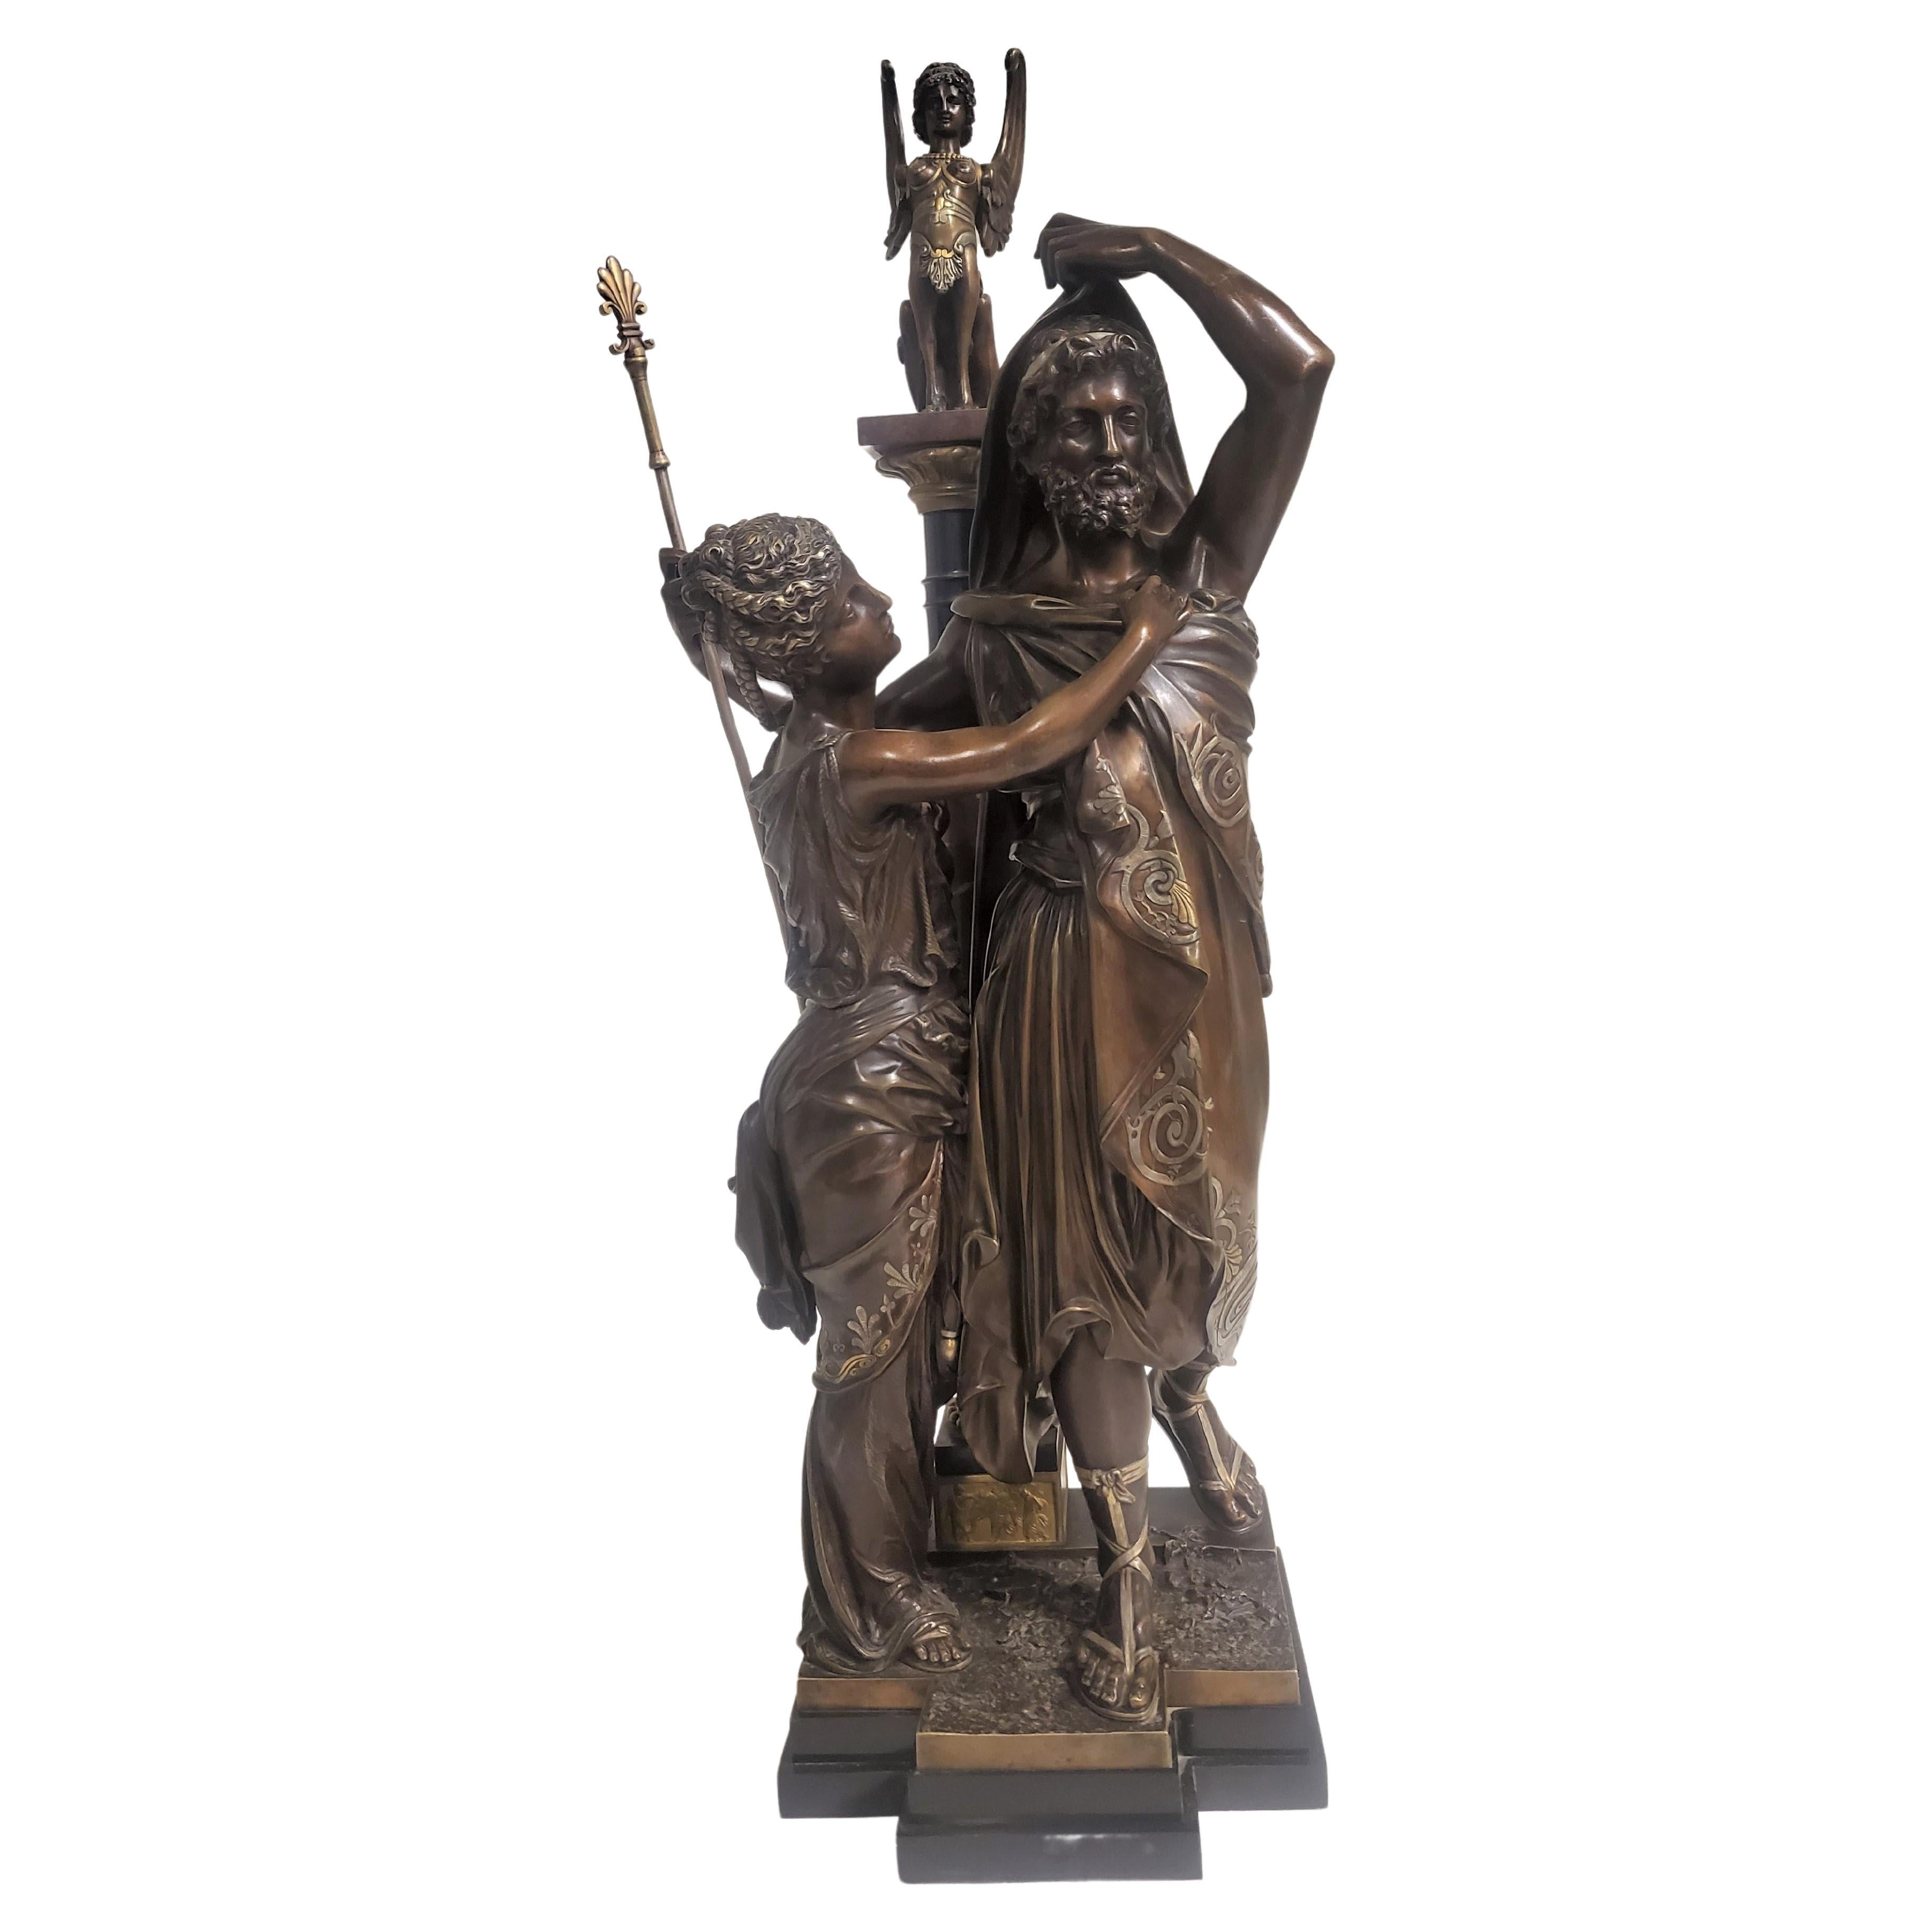 Grande sculpture française du 19ème siècle en argent et bronze doré représentant un homme et une femme